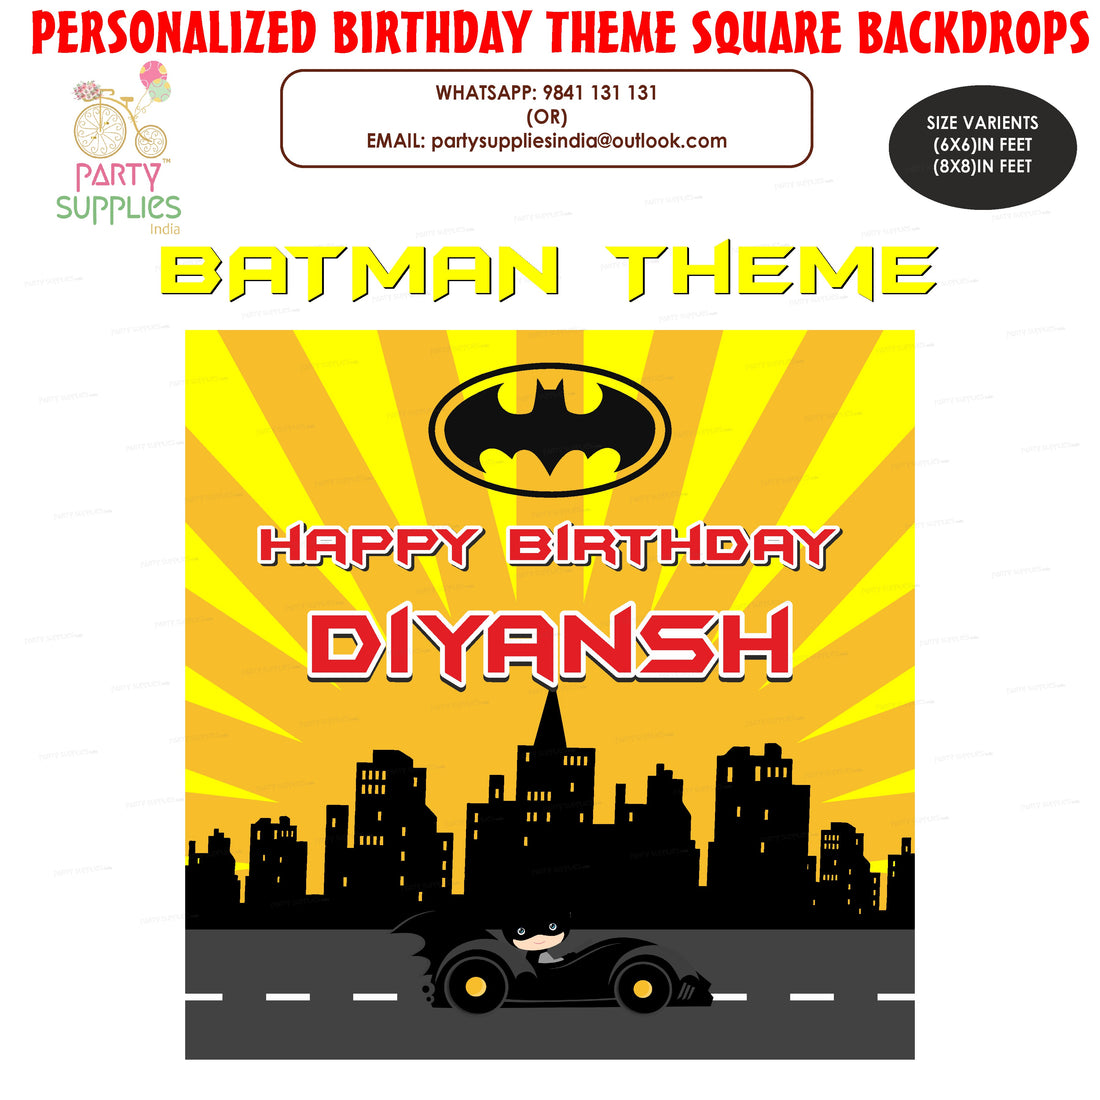 PSI Batman Theme Square Customized Backdrop